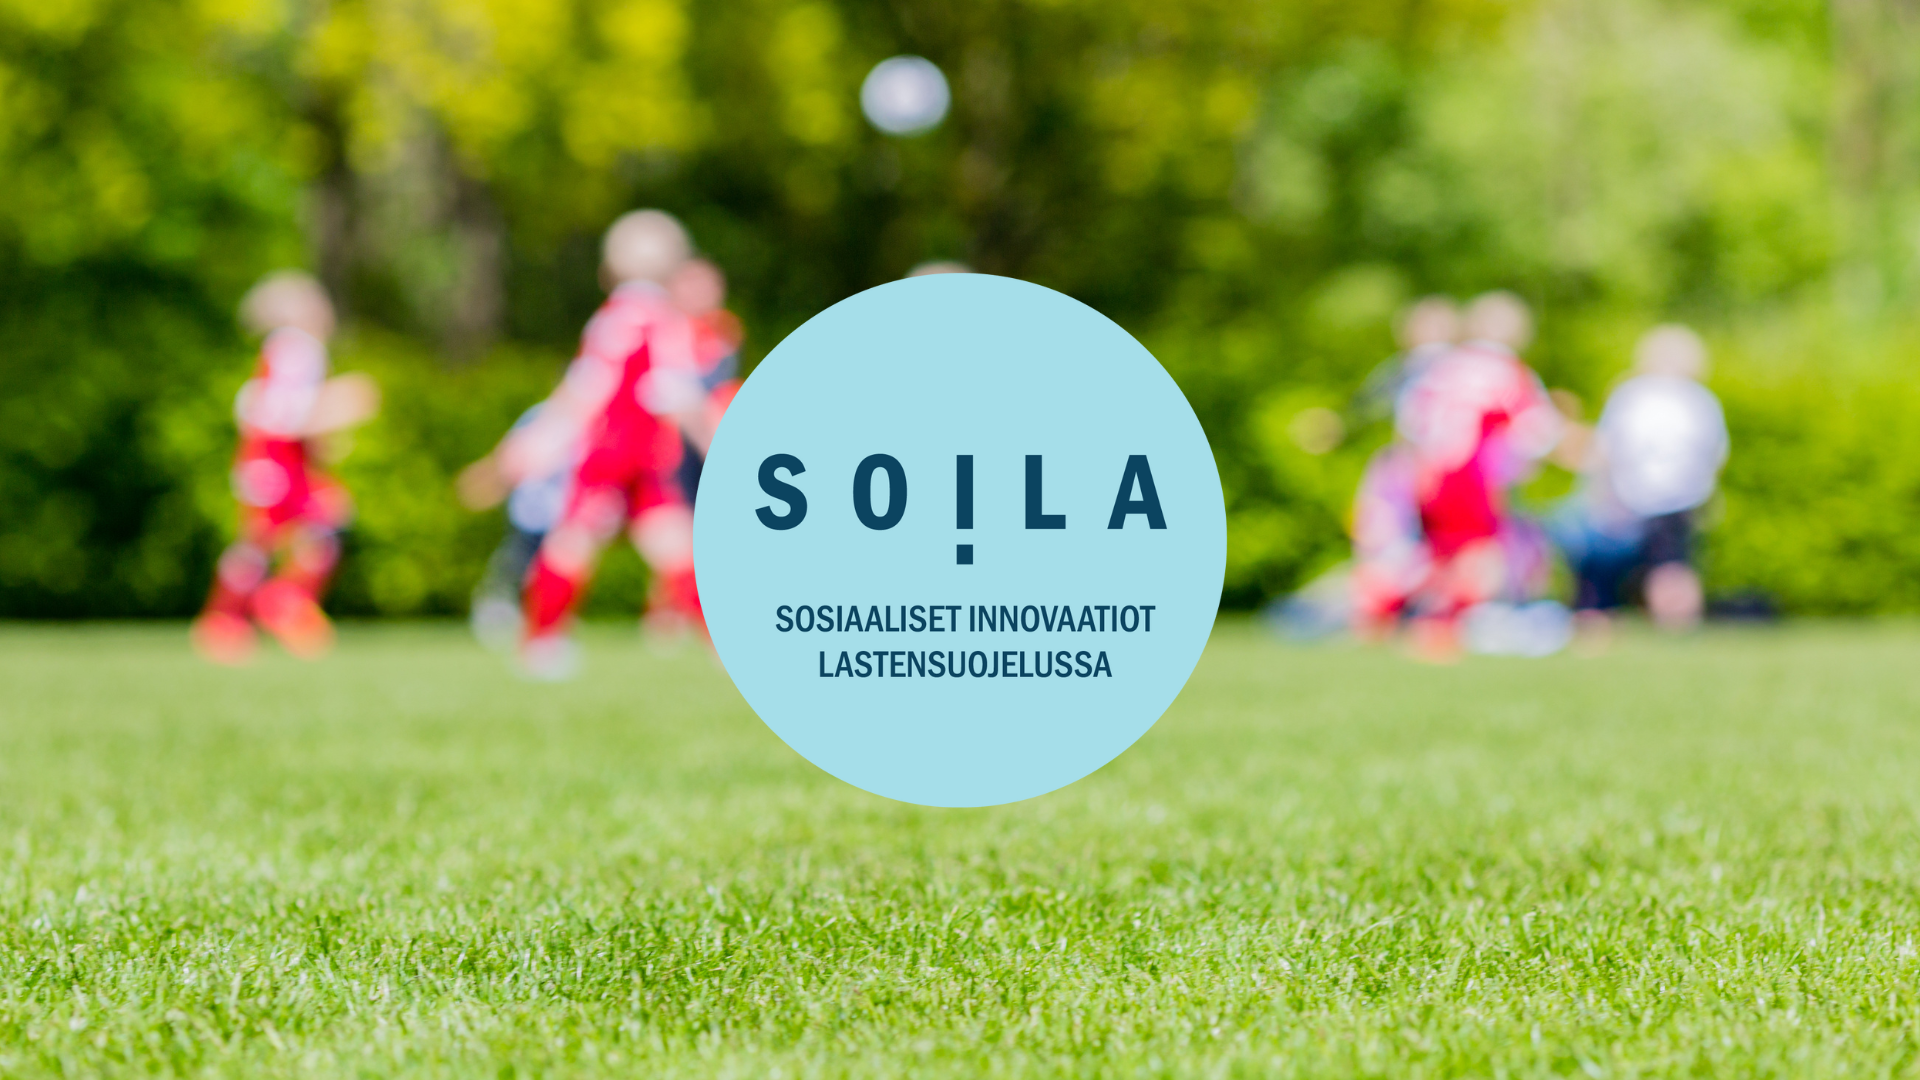 Lapsia pelaamassa jalkapalloa. SOILA-koordinaatiohankkeen tunniste.